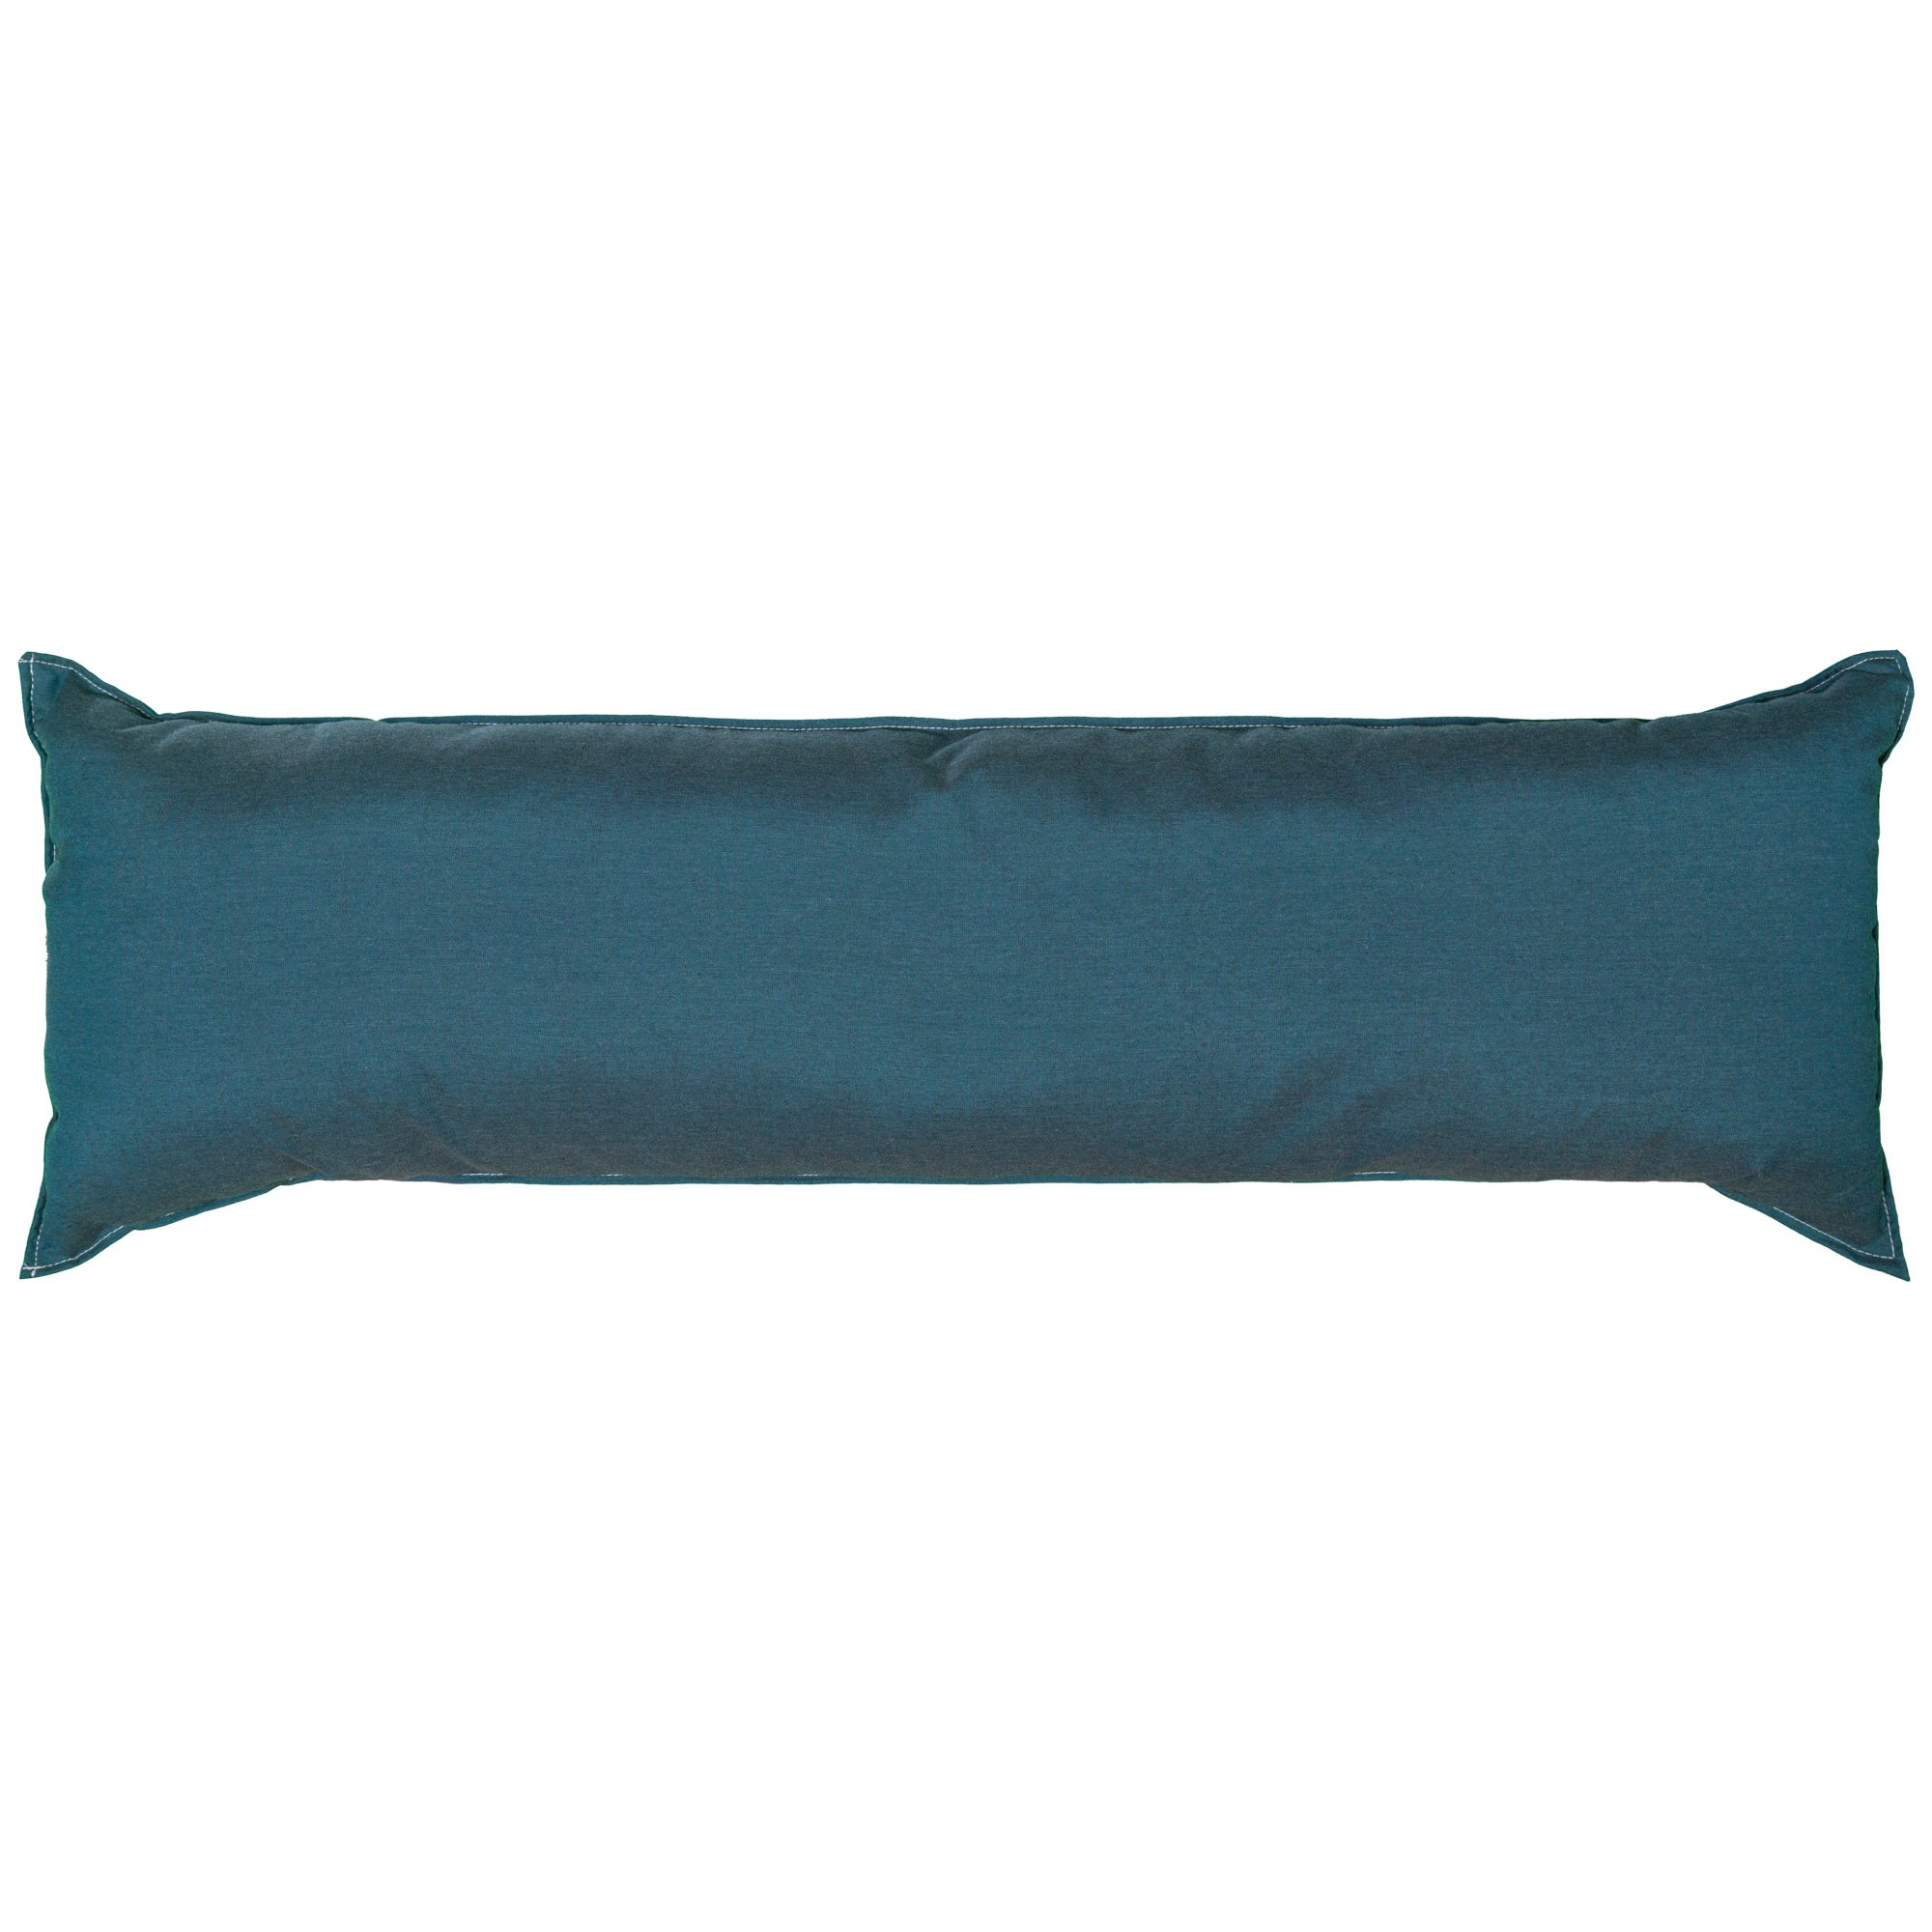 long blue pillow